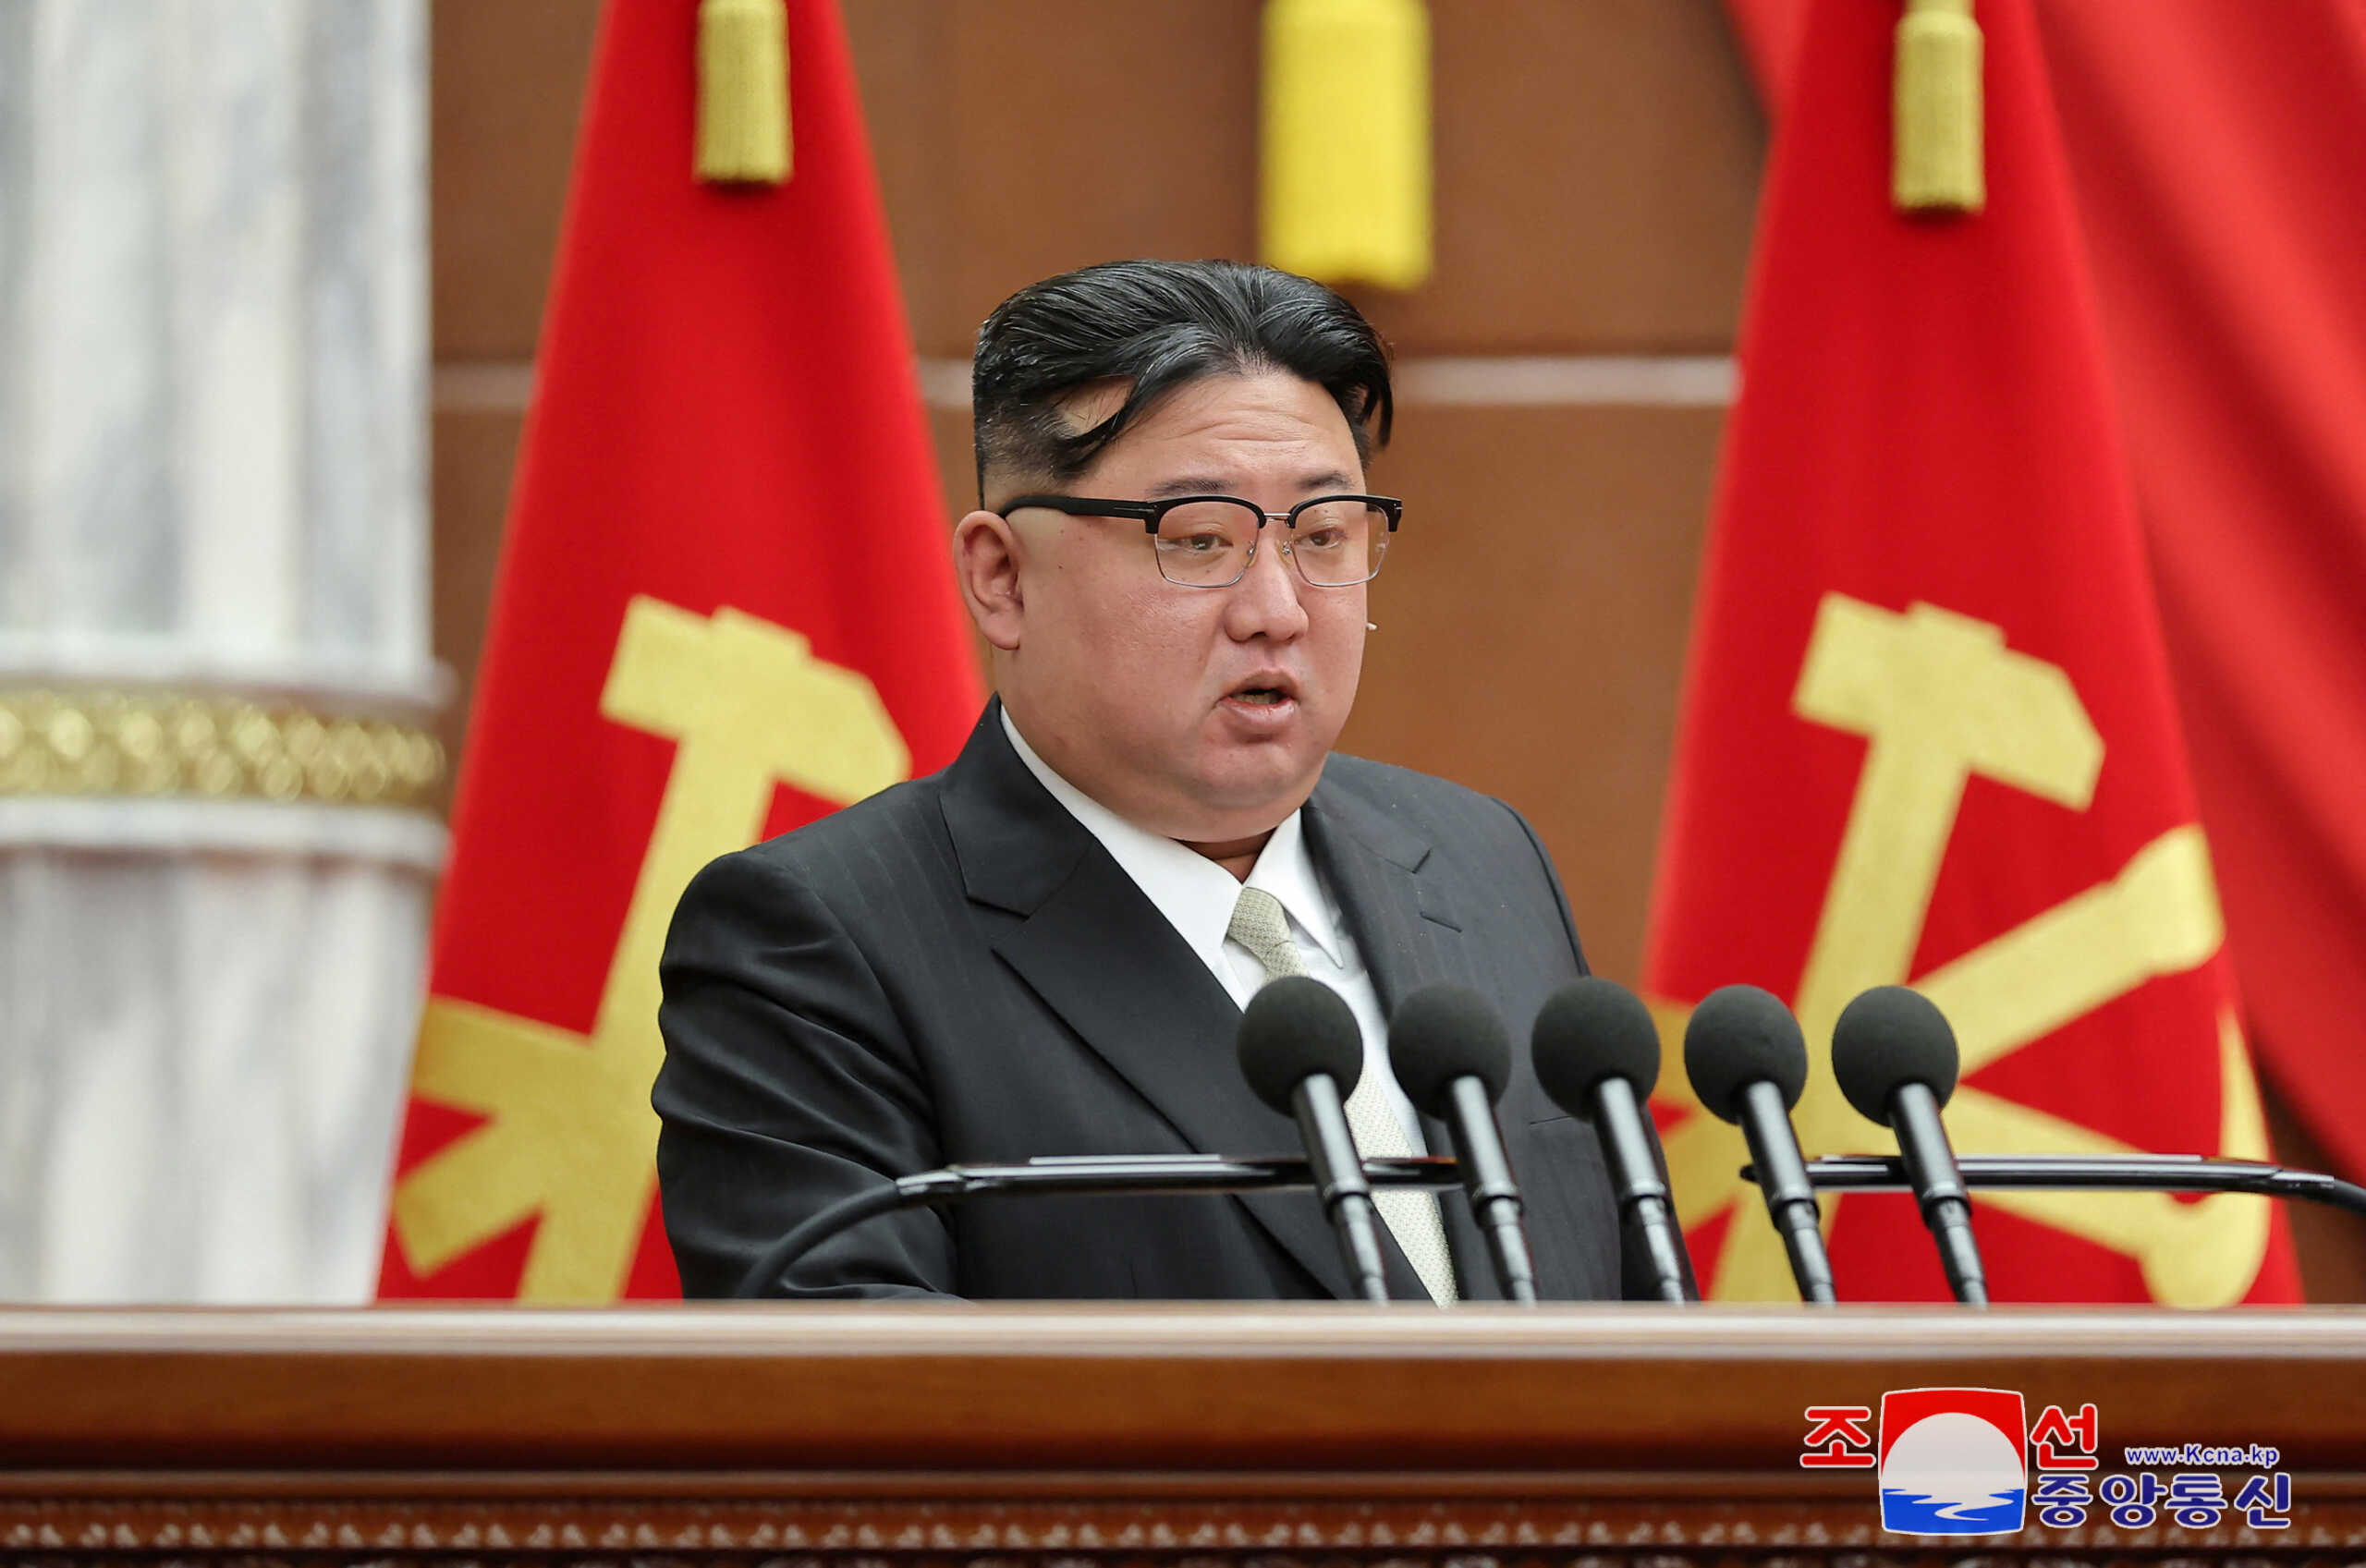 Ο Κιμ Γιονγκ Ουν απέκλεισε το ενδεχόμενο συμφιλίωσης της Βόρειας Κορέας με τη Νότια Κορέα